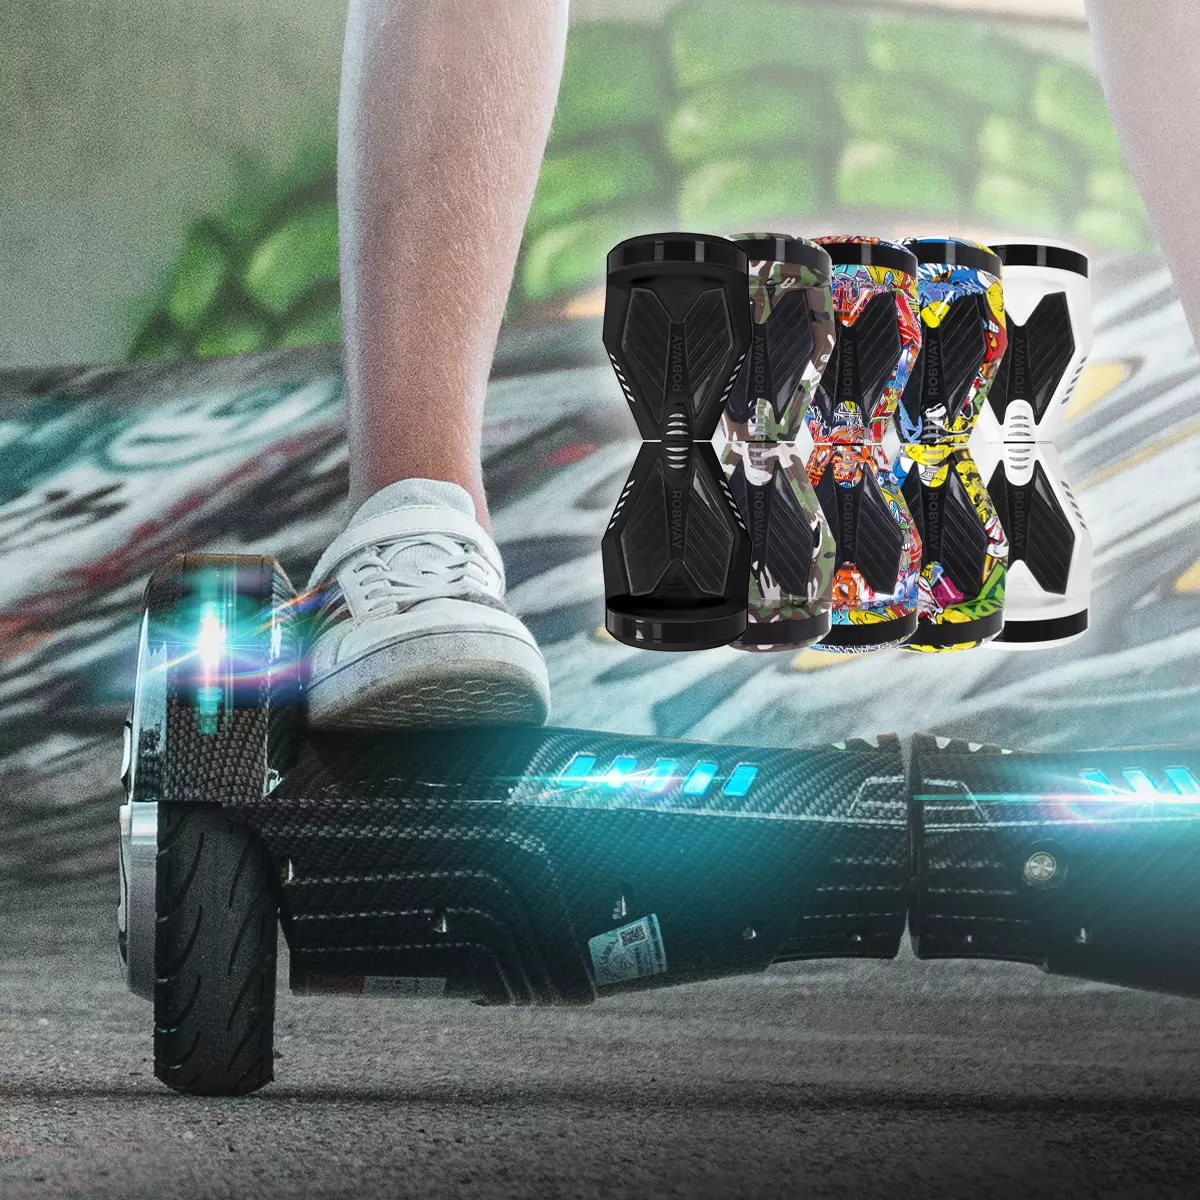 Füße in Sneakern auf Hoverboard, fünf weitere Hoverboards in unterschiedlichen Farben